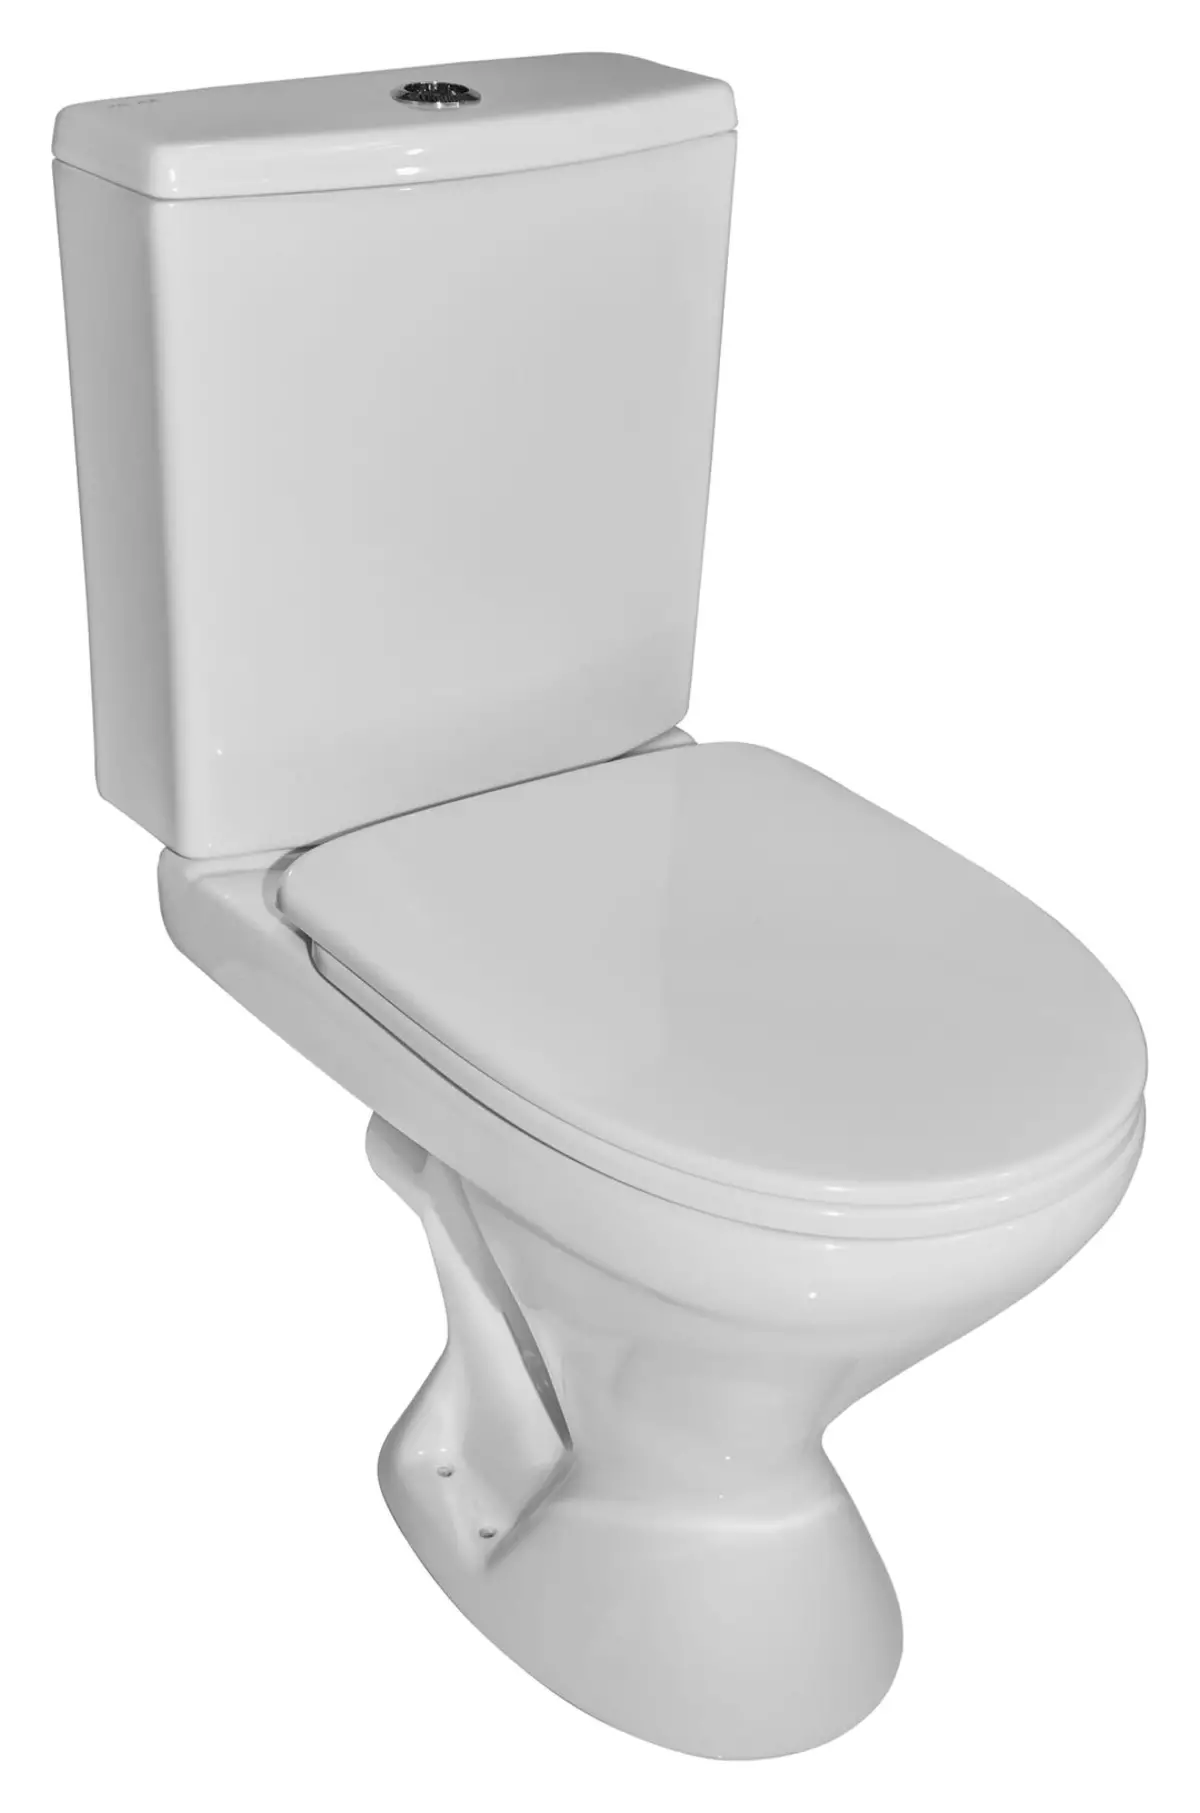 Am.pm tualetid: Suspension WC hüpata ja Gem Compact'i mudelite kirjeldus, Perekonnad ja Awe, Vaimu ja tabamuse, ülevaateid 10520_39